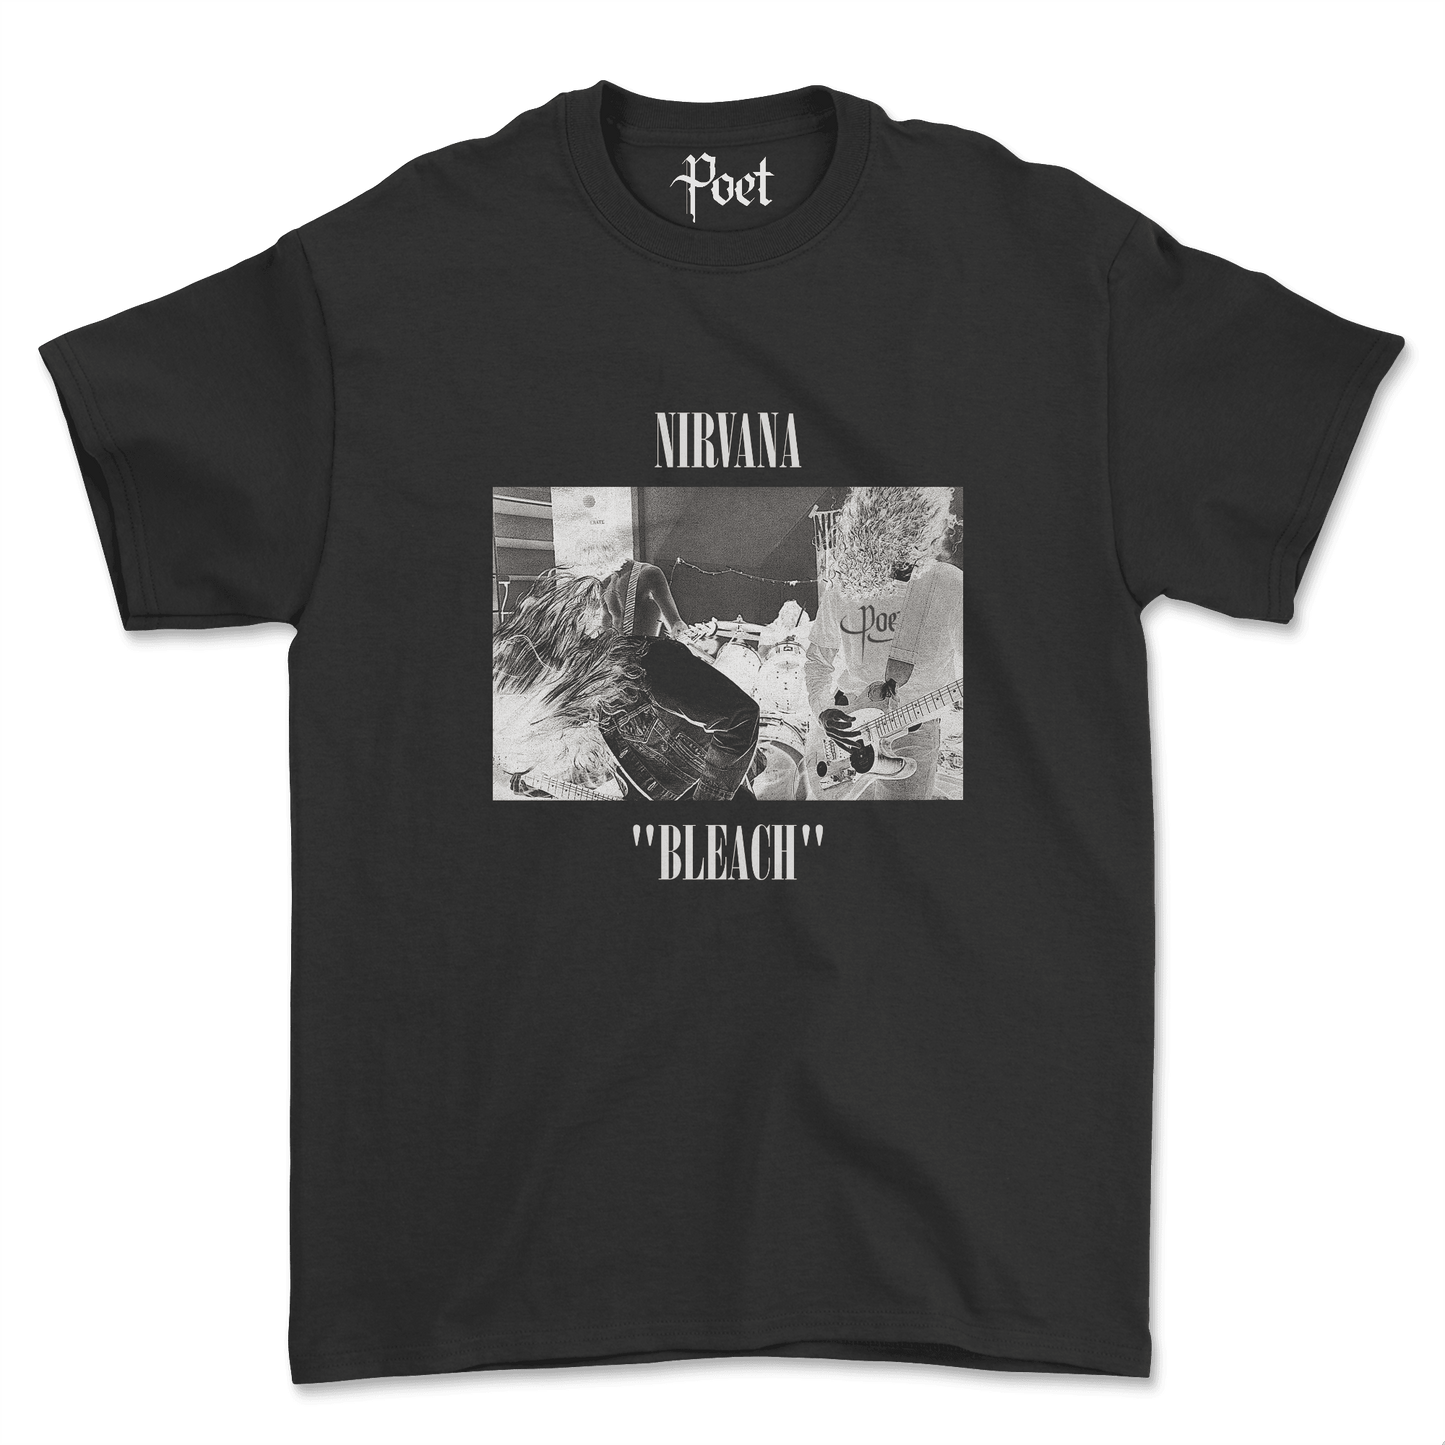 Nirvana Bleach T-Shirt - Poet Archives